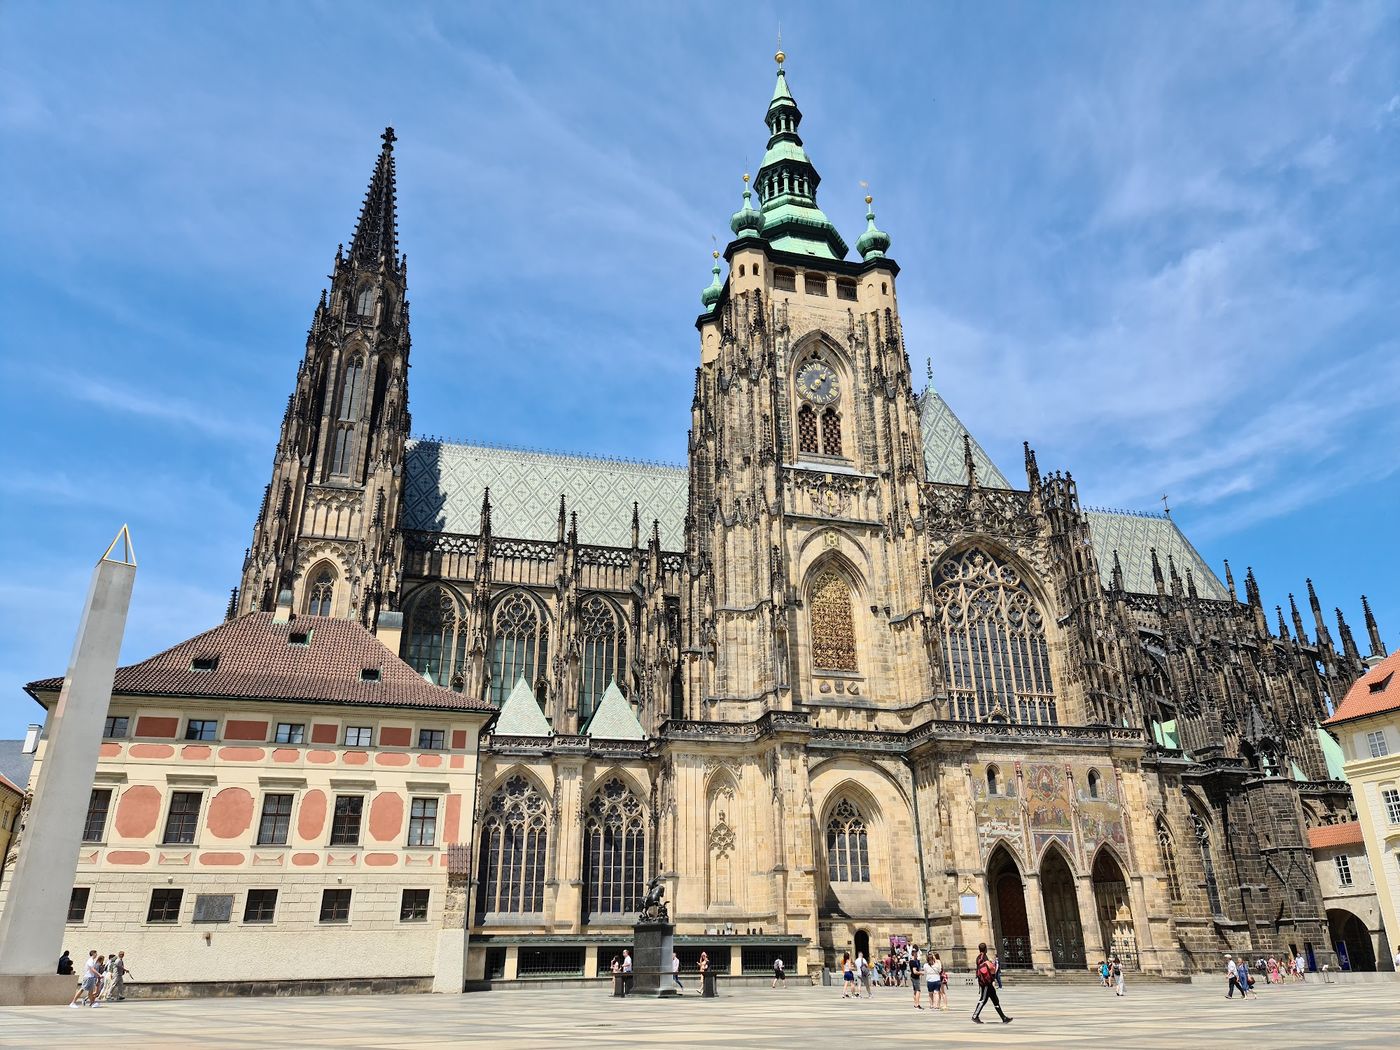 Taucht ein in die Geschichte und Pracht der Prager Burg